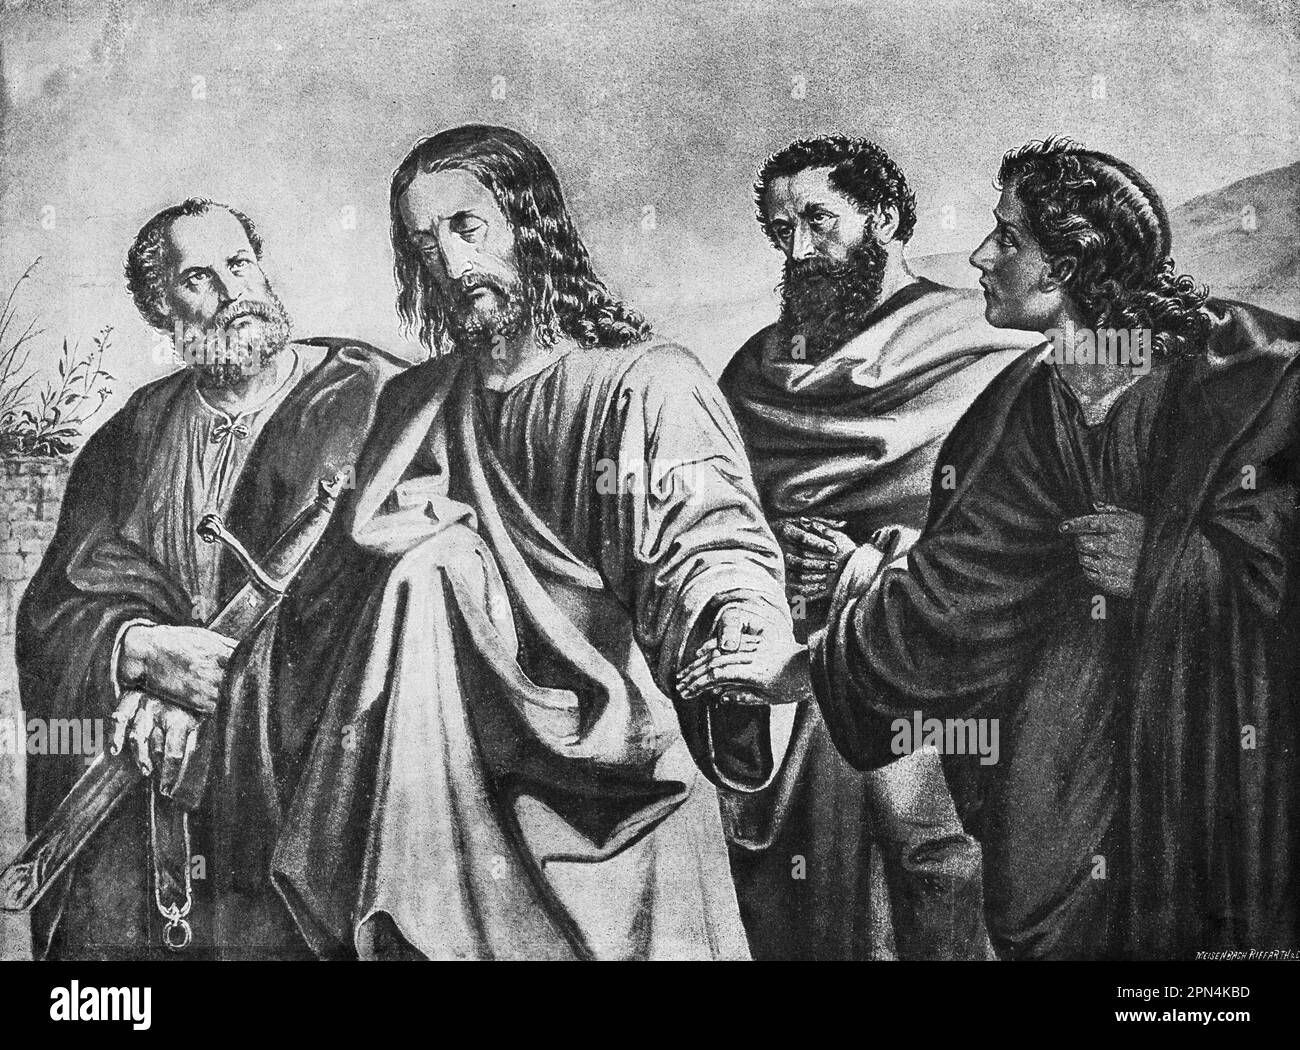 Jesus Christus auf dem Weg in den Garten von Gethsemane, bibel, Neues Testament, Mtthew Kapitel 26, Verse 30-46, Historische Abbildung 1890 Stockfoto